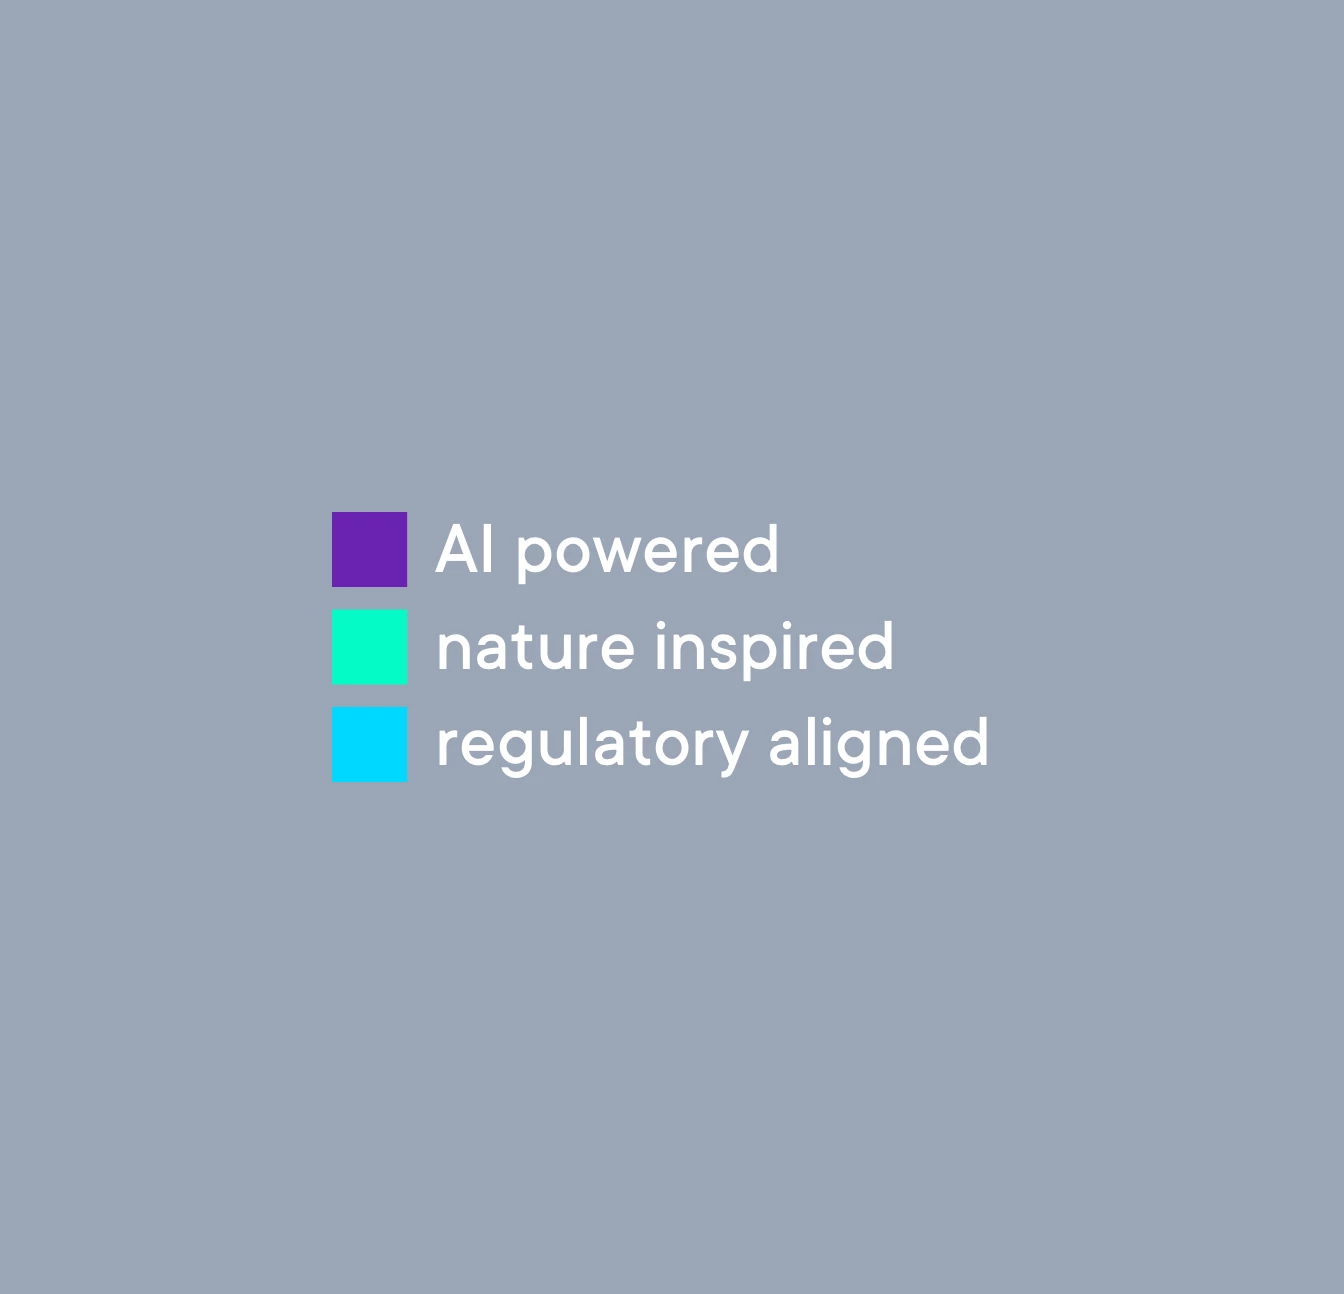 3 Farbfelder mit Beschriftung: Violett: AI powered, Türkis: nature inspired, Cyan: regulatory aligned – als Erklärung der benutzen Farben im Kuyua Lead-Visual